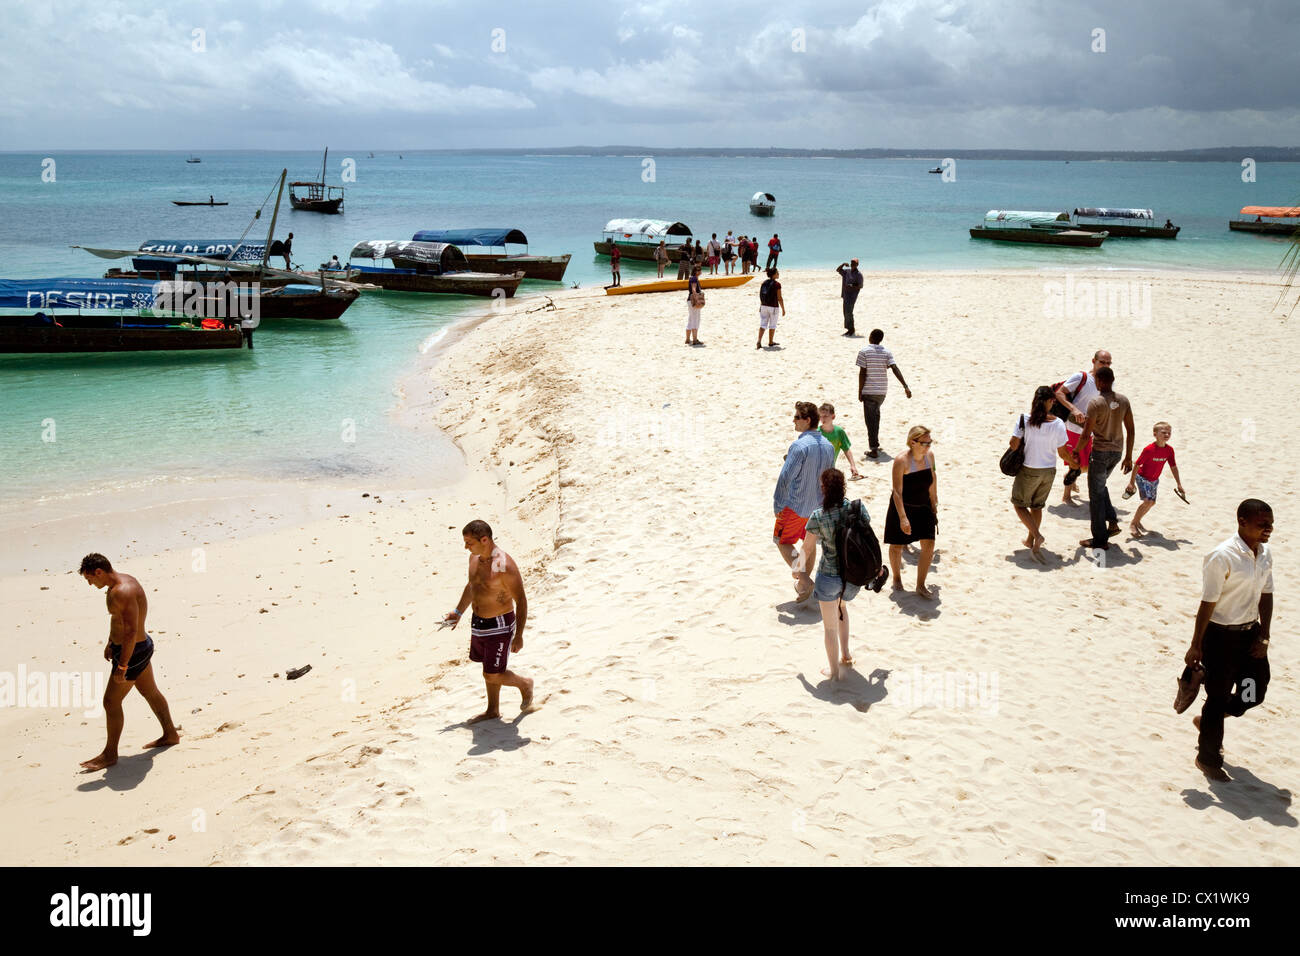 Afrika-Strand; Touristen, die mit dem Boot am Strand ankommen, Prison Island (Changuu), Sansibar Africa Stockfoto